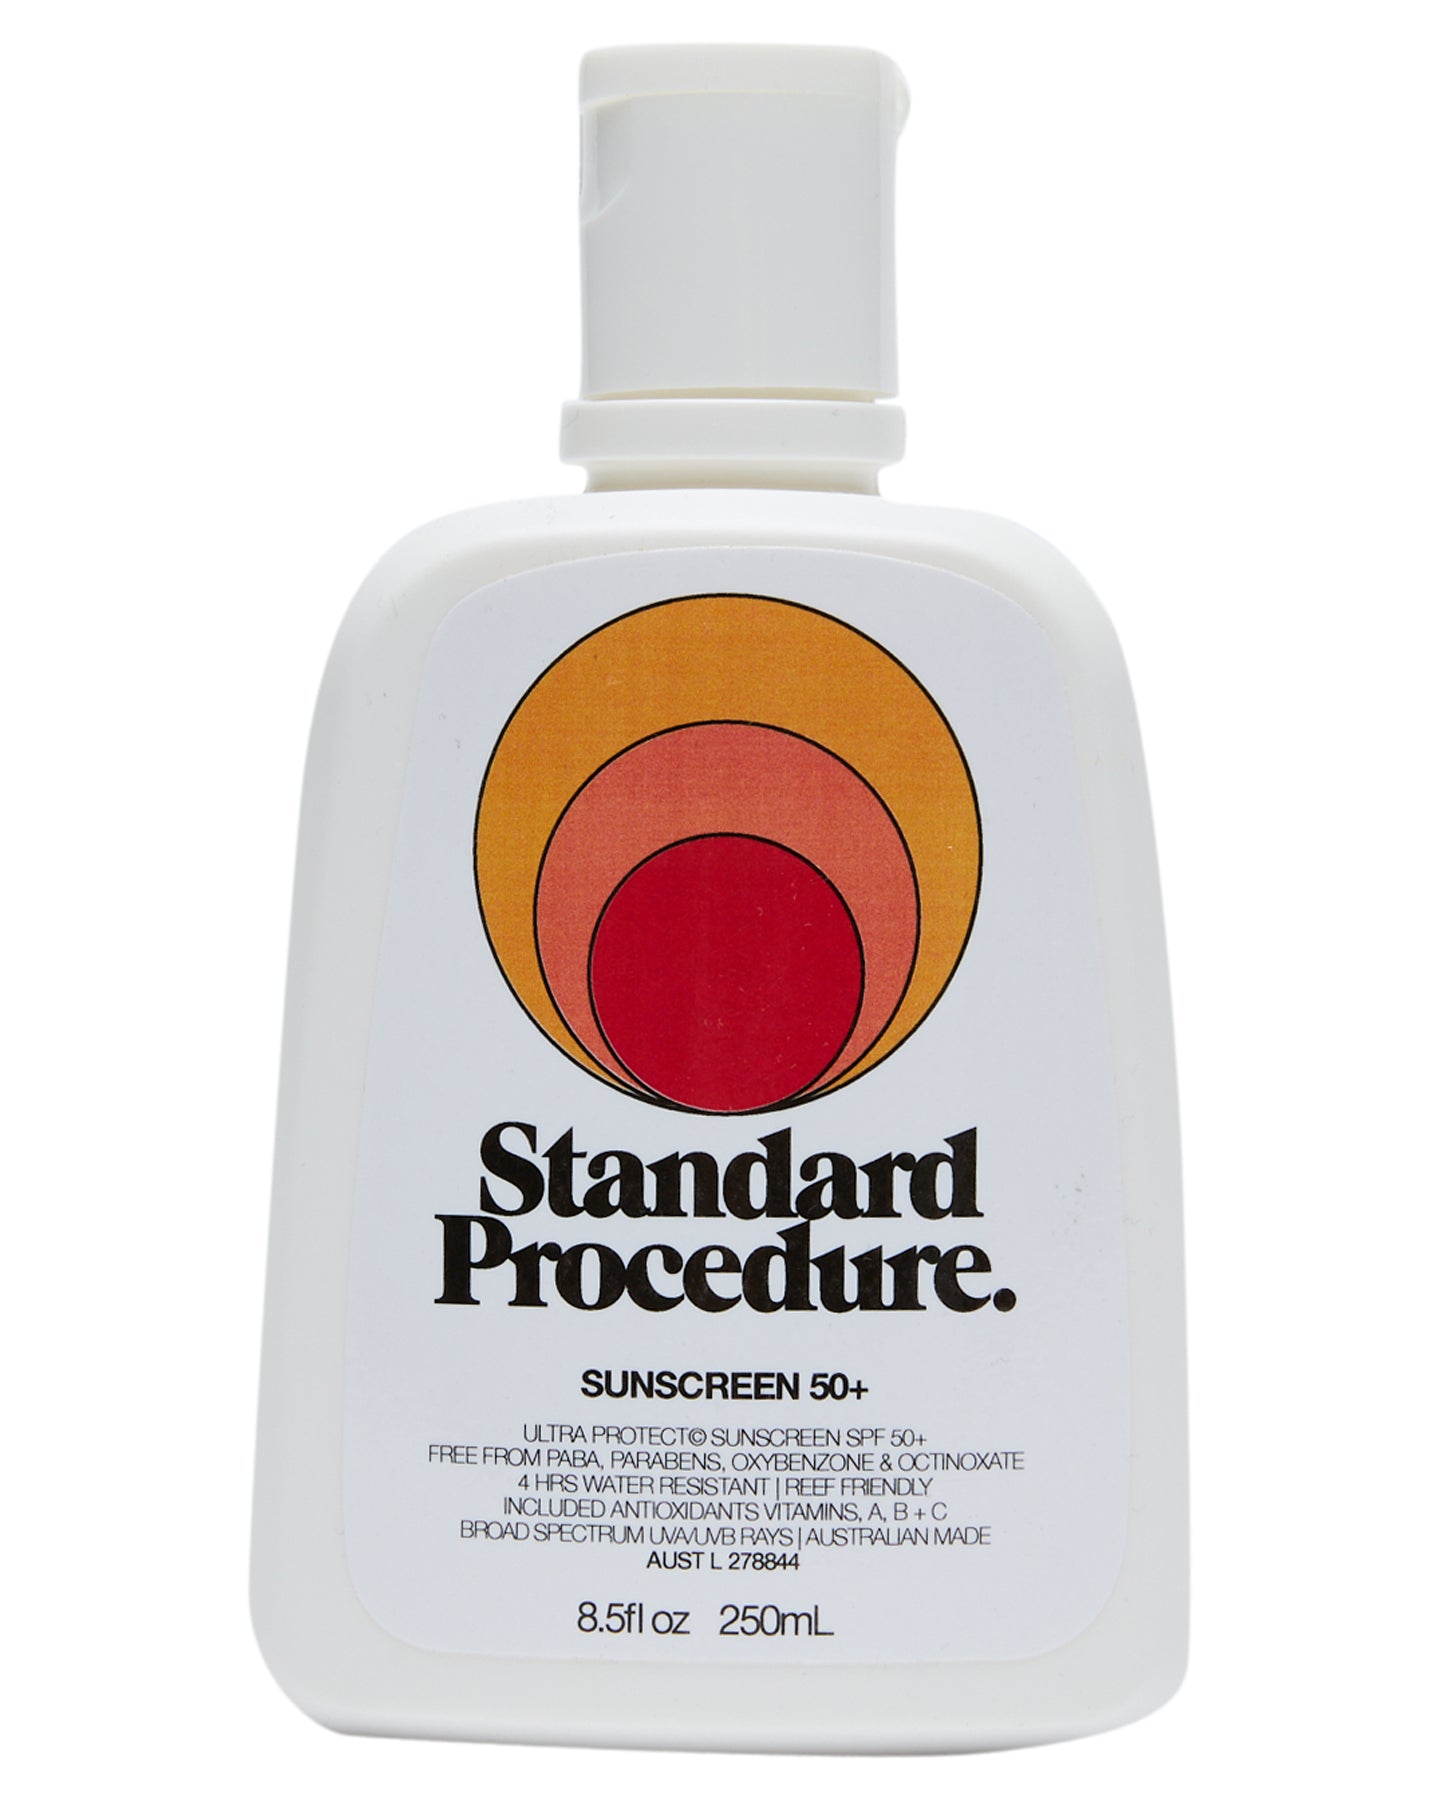 Standard Procedure - Sunscreen 50+